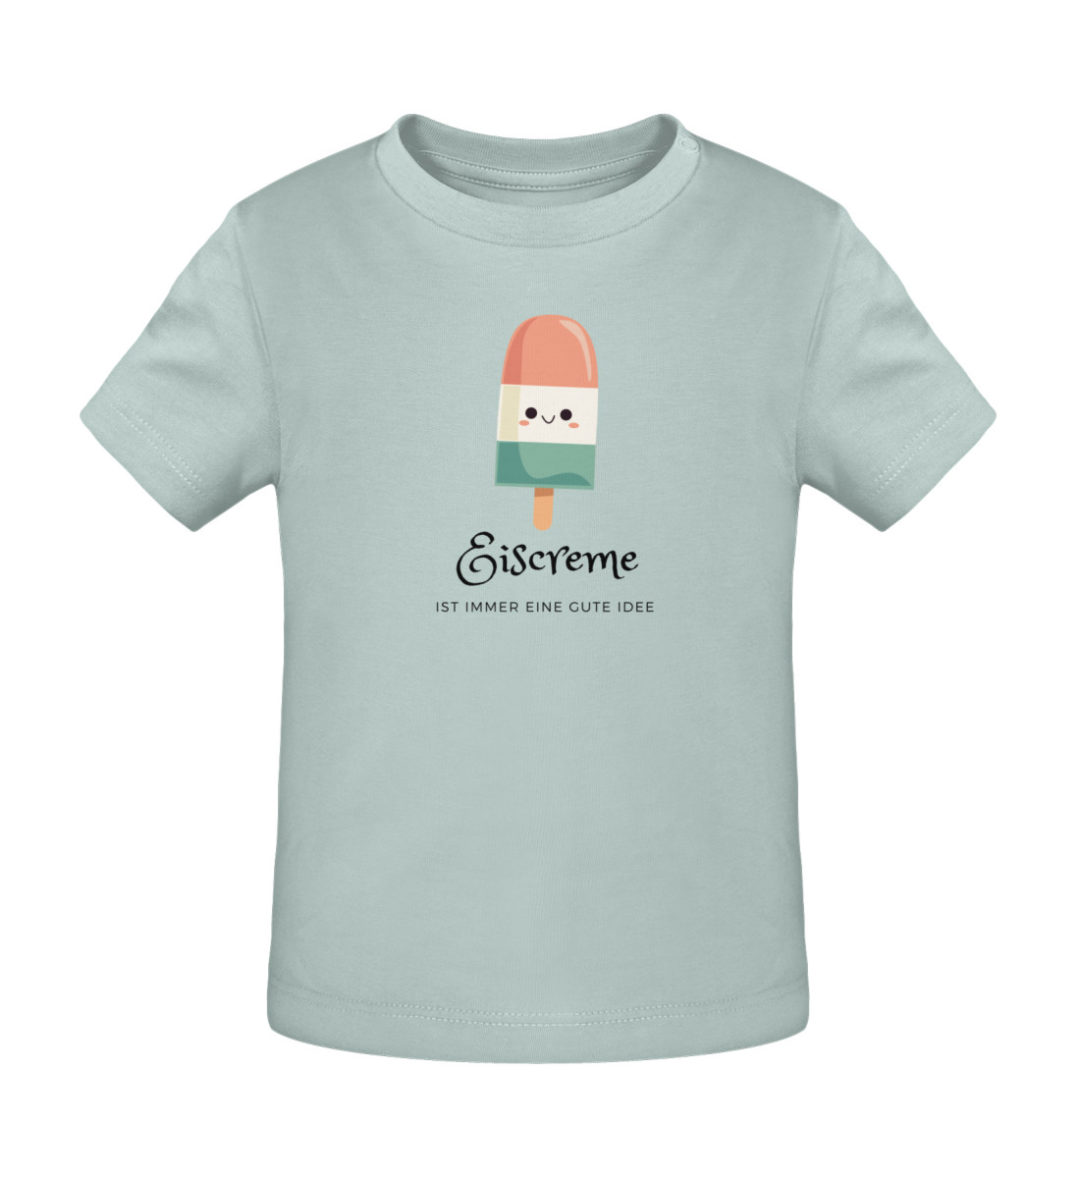 Eiscreme ist immer eine gute Idee - Baby Creator T-Shirt ST/ST-7033